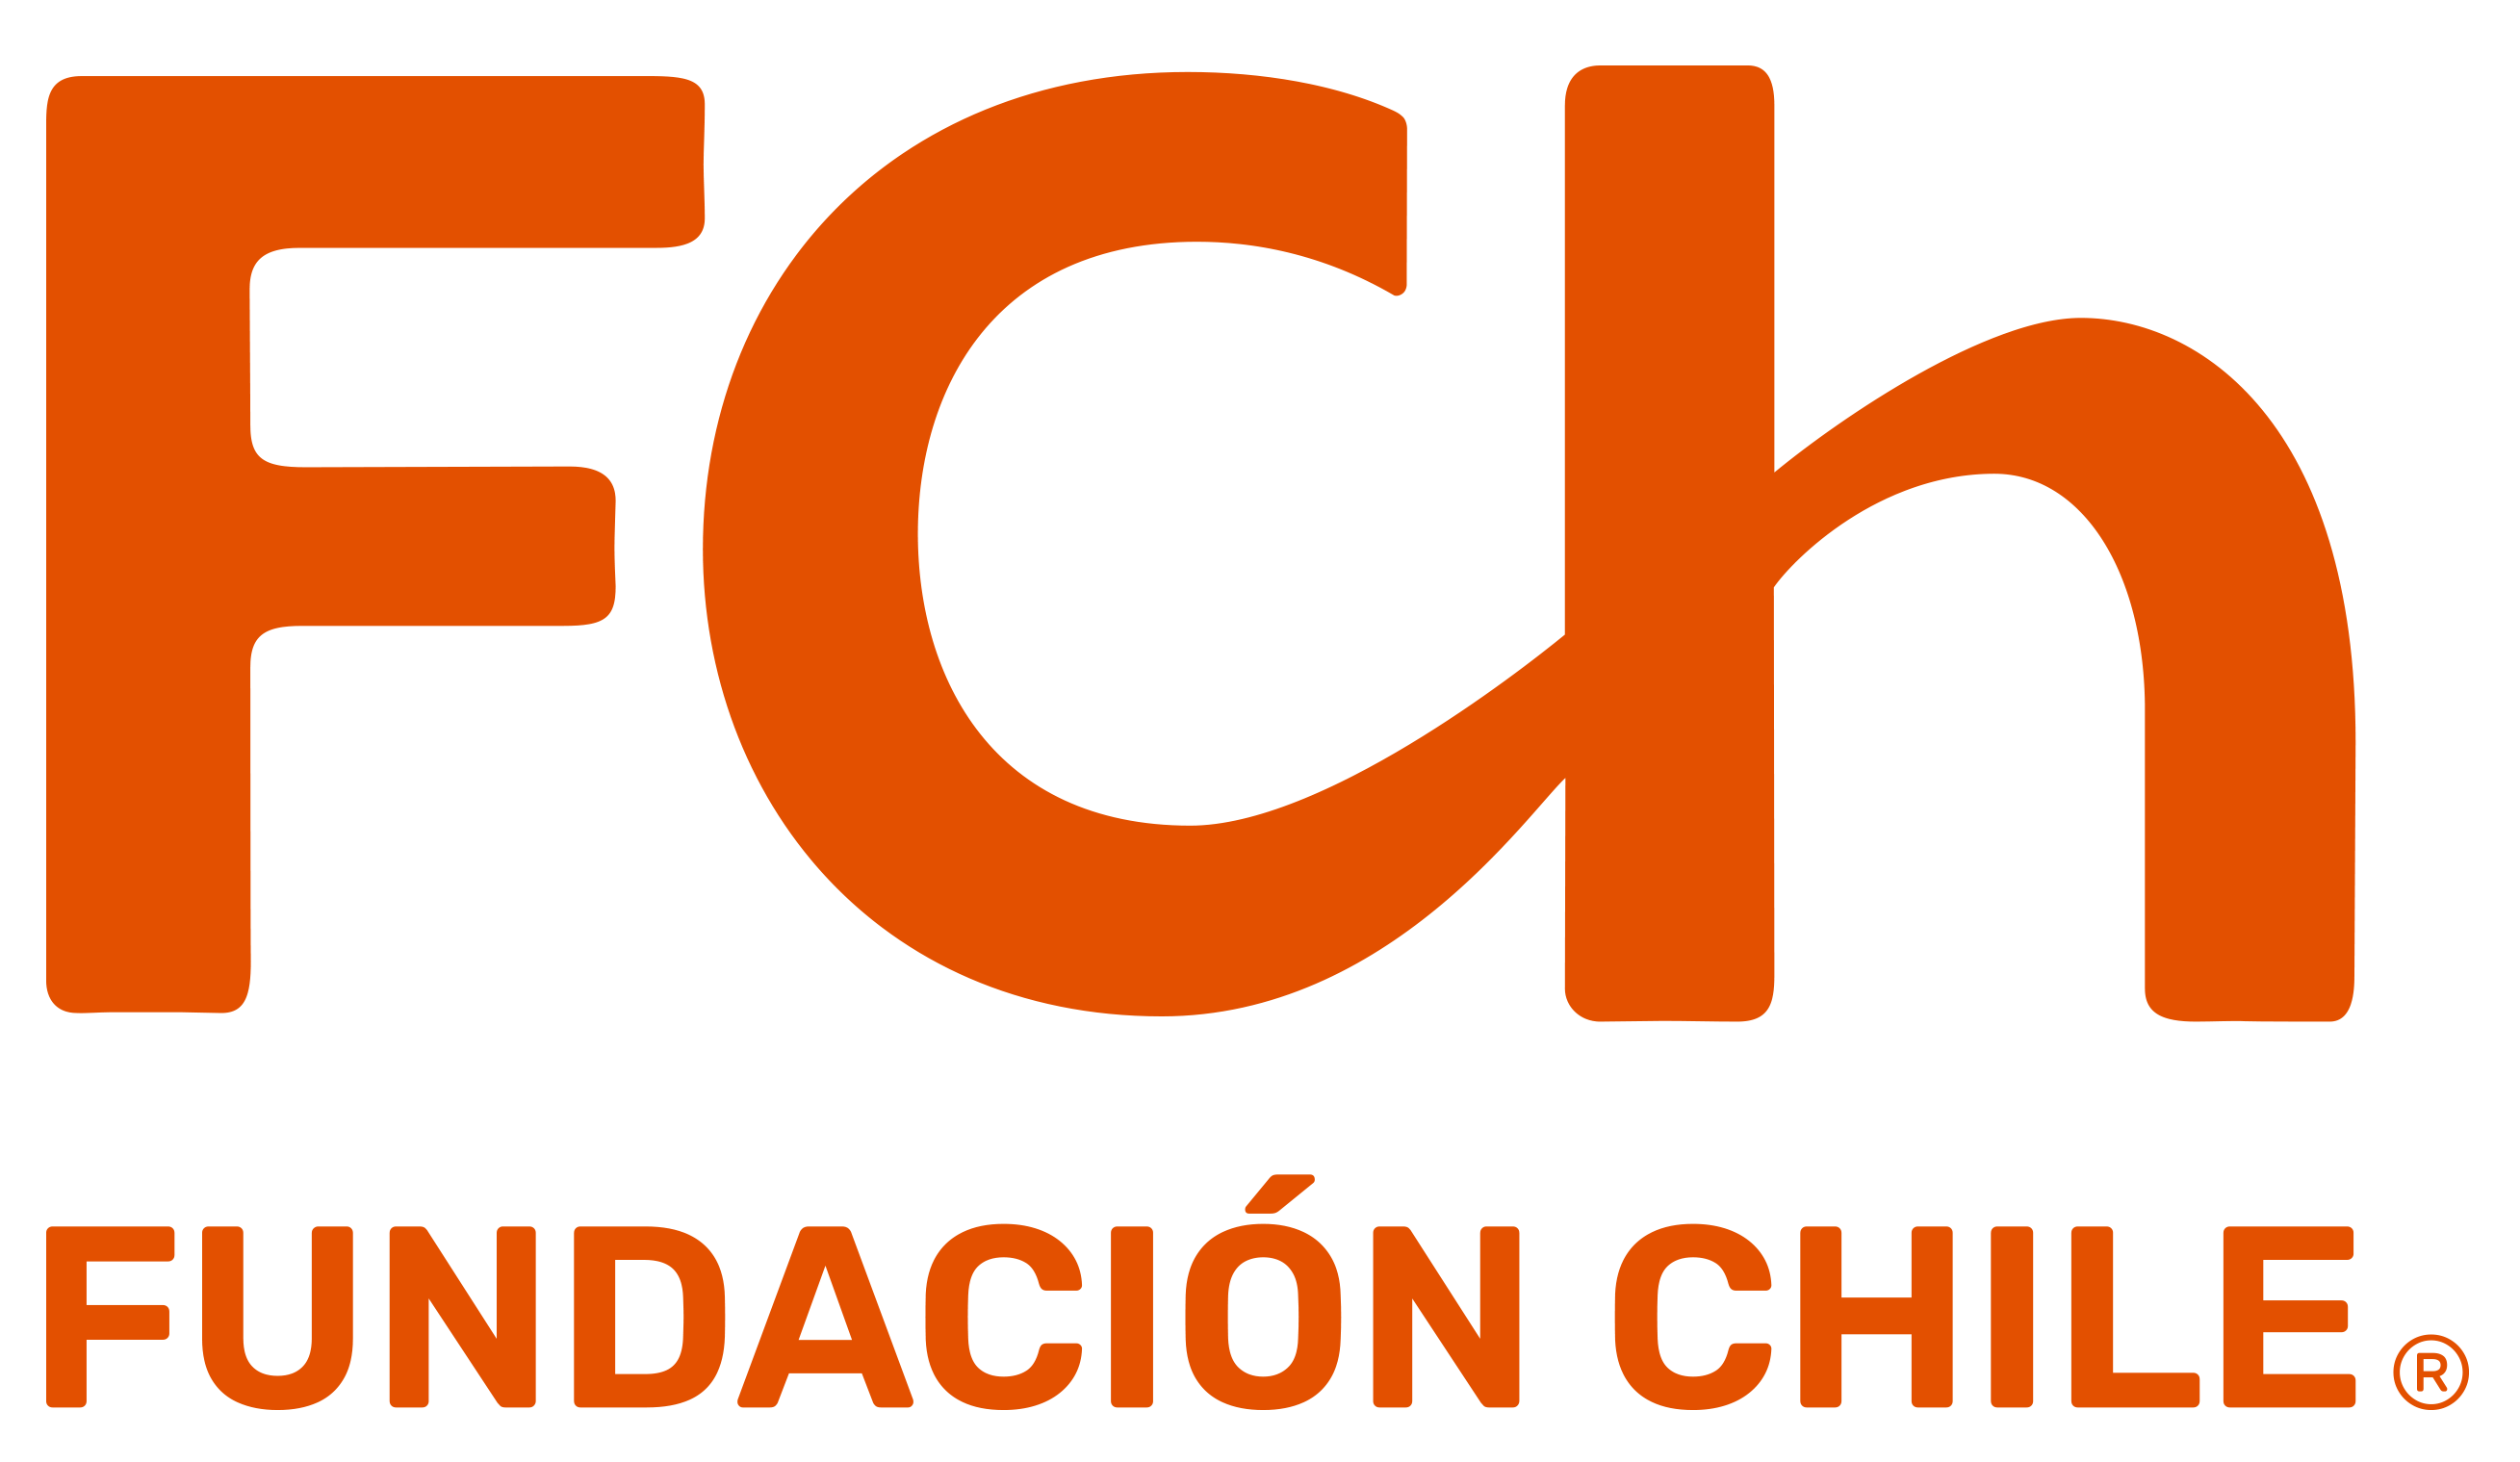 Fundación Chile